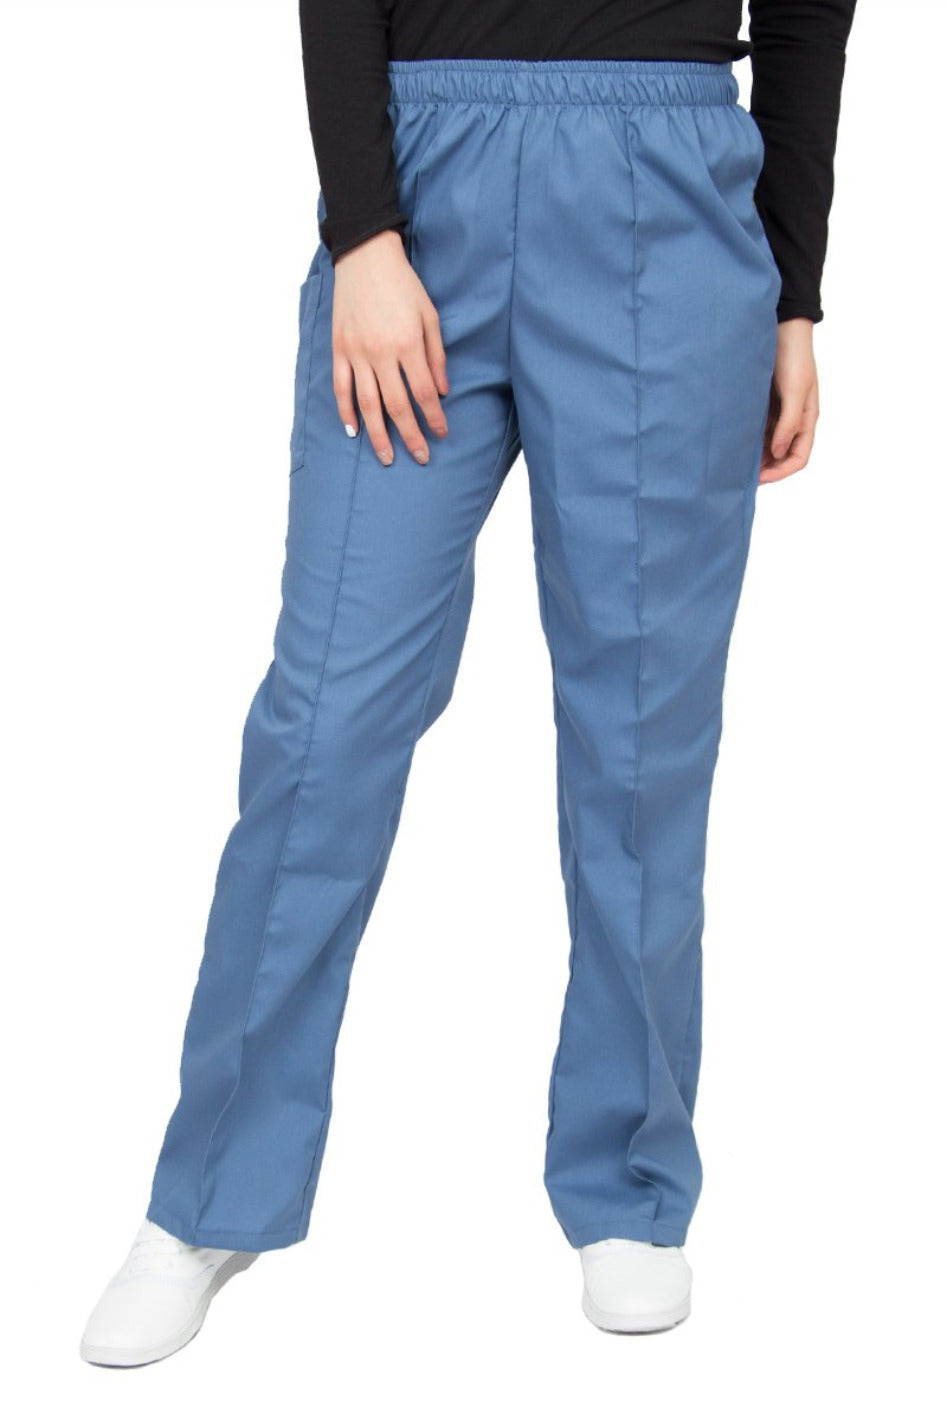 Pantalón médico azúl petróleo de corte recto, con una aforza al frente, una bolsa en el lado derecho con cierre de velcro, y cintura de elástico.